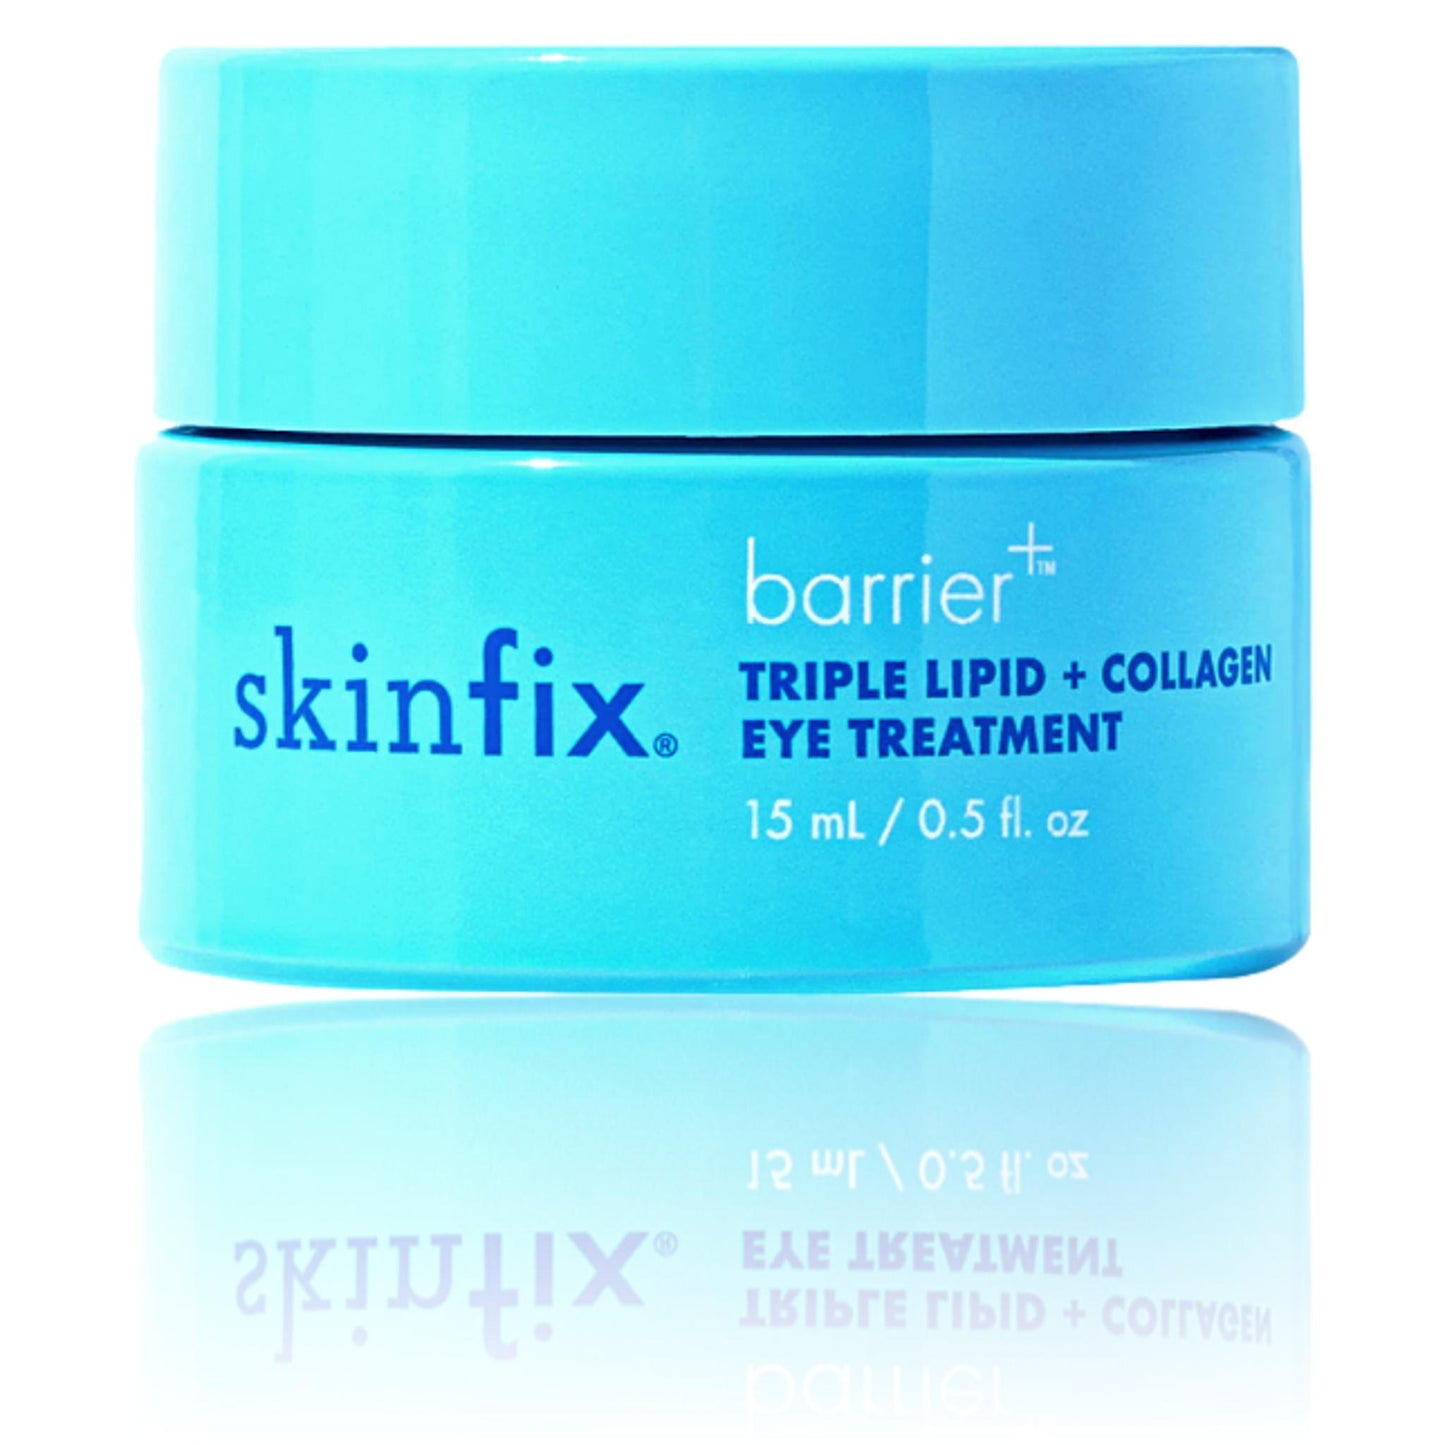 Skinfix barrier+ Triple Lipid + Collagen Brightening Eye Treatment | 15 mL